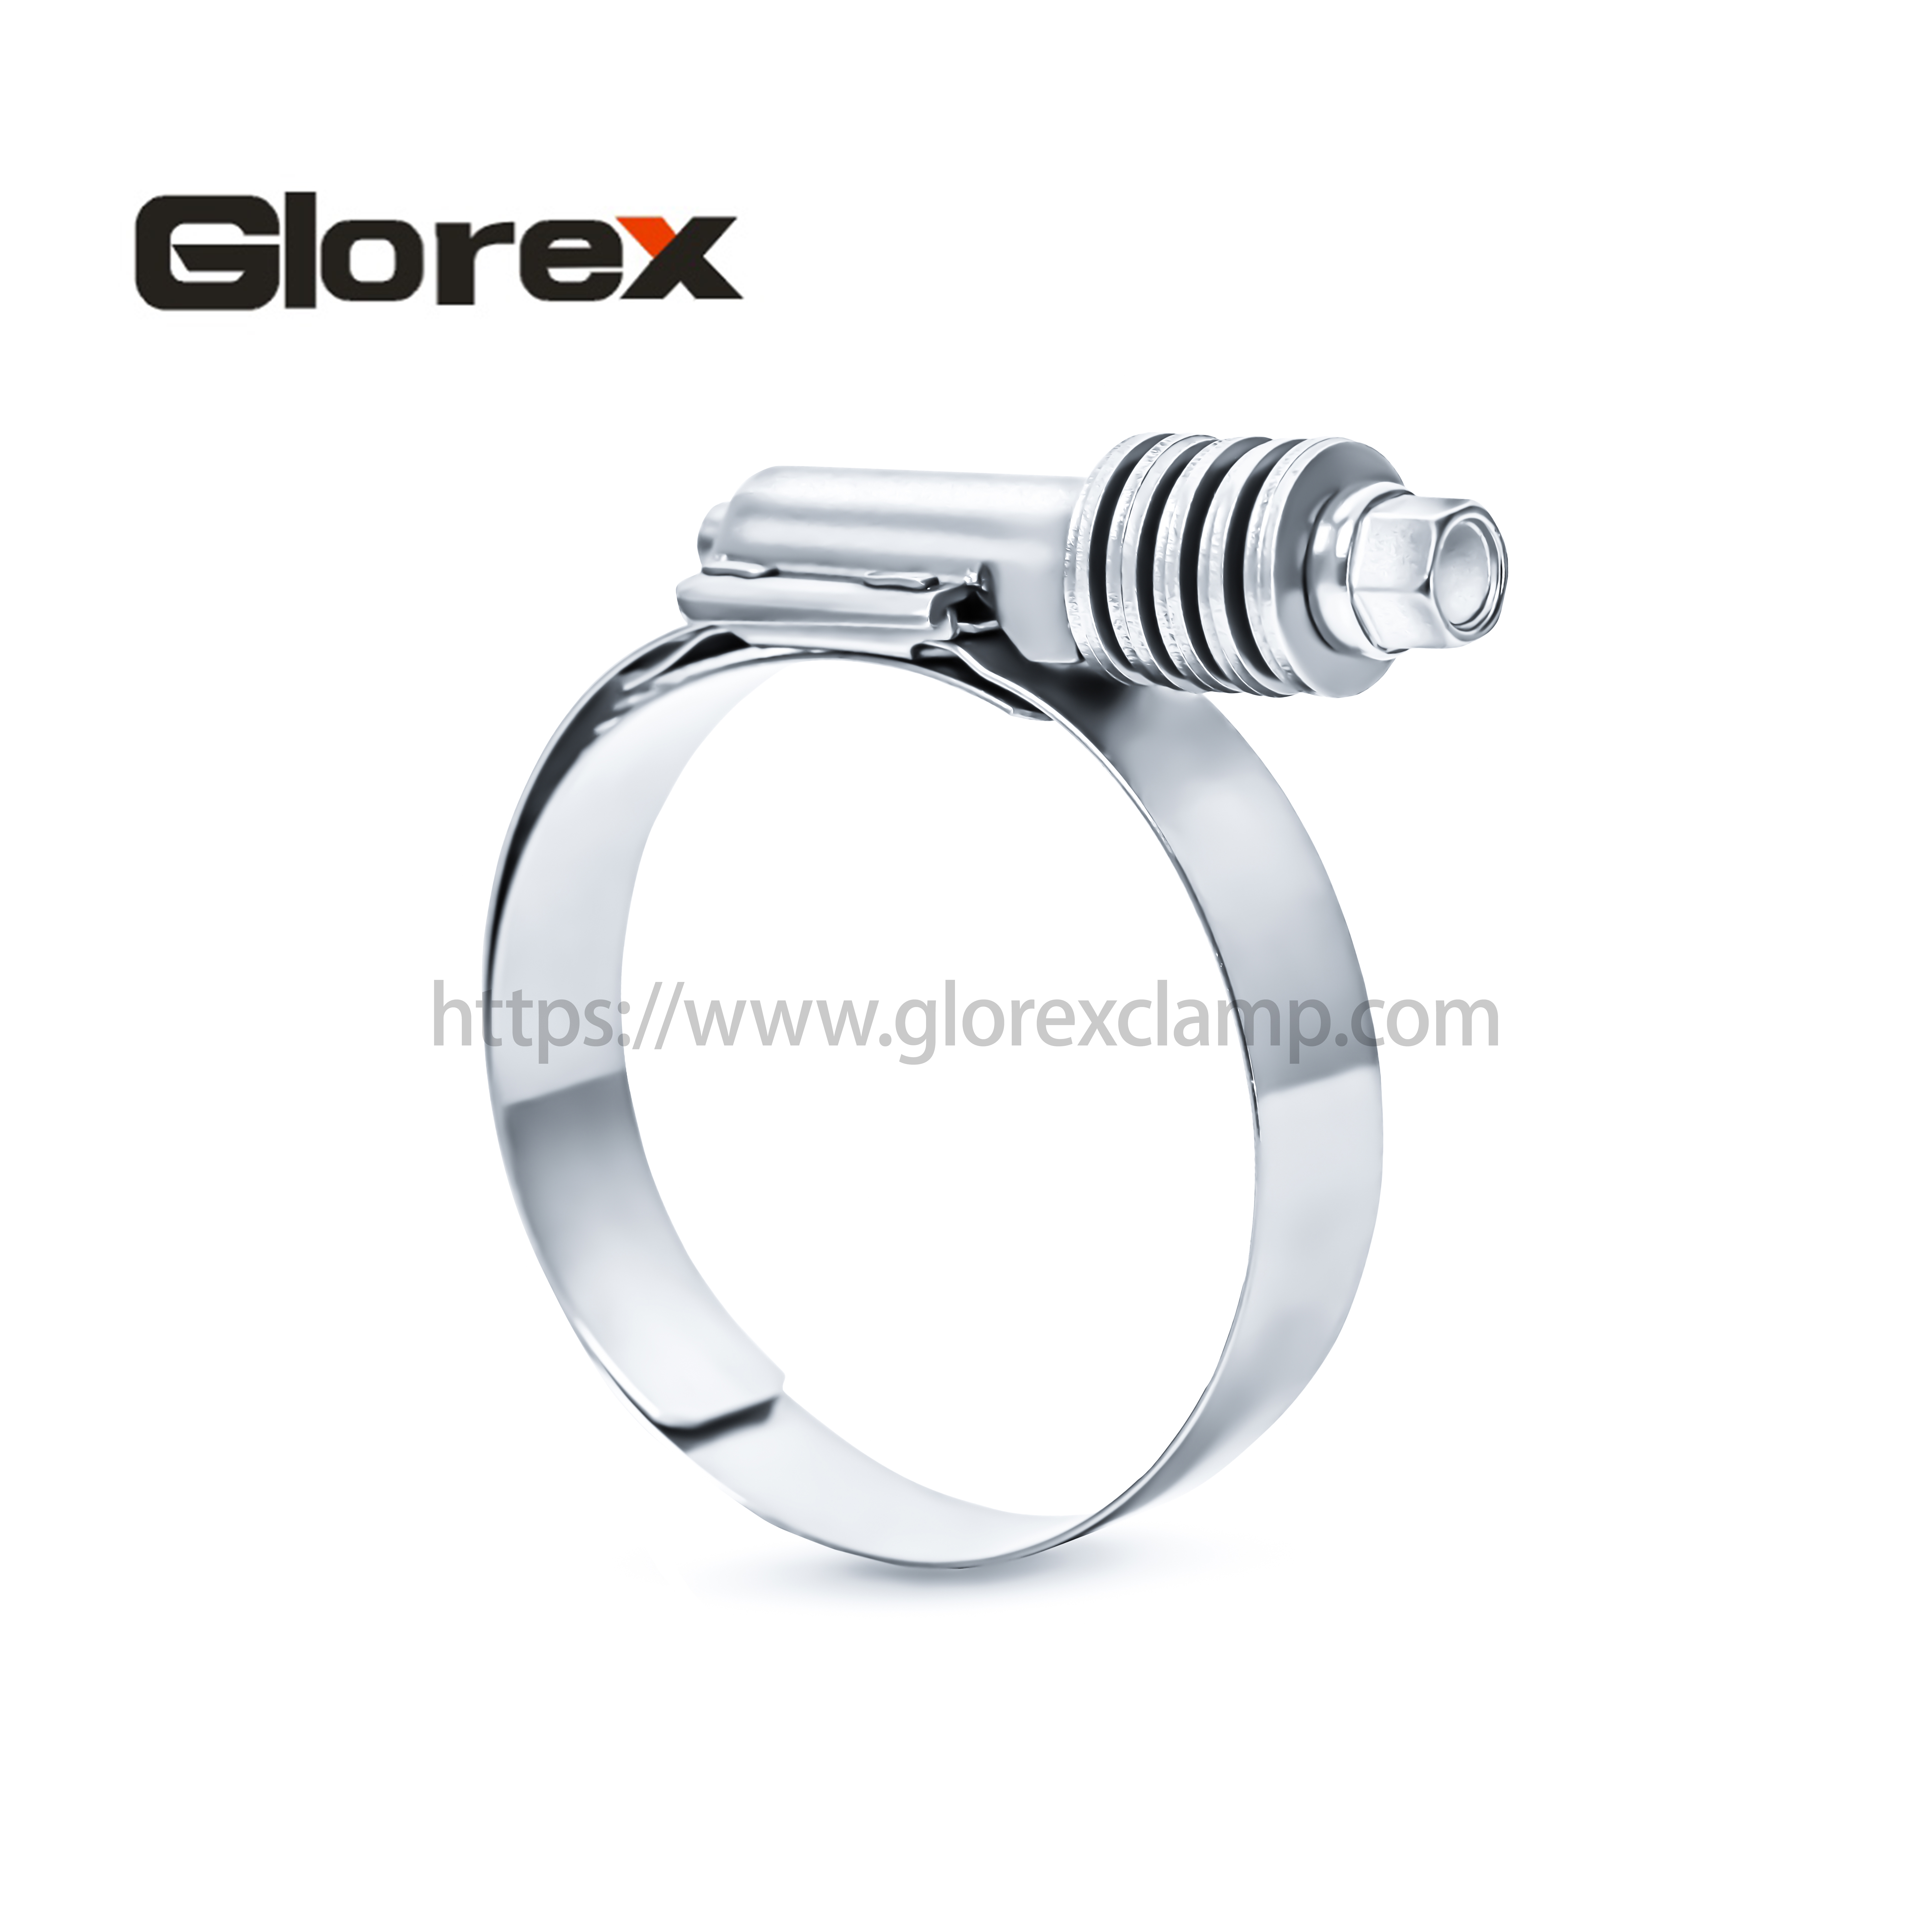 2020 China New Design Mini Hose Clamps - Constant torque clamp – Glorex